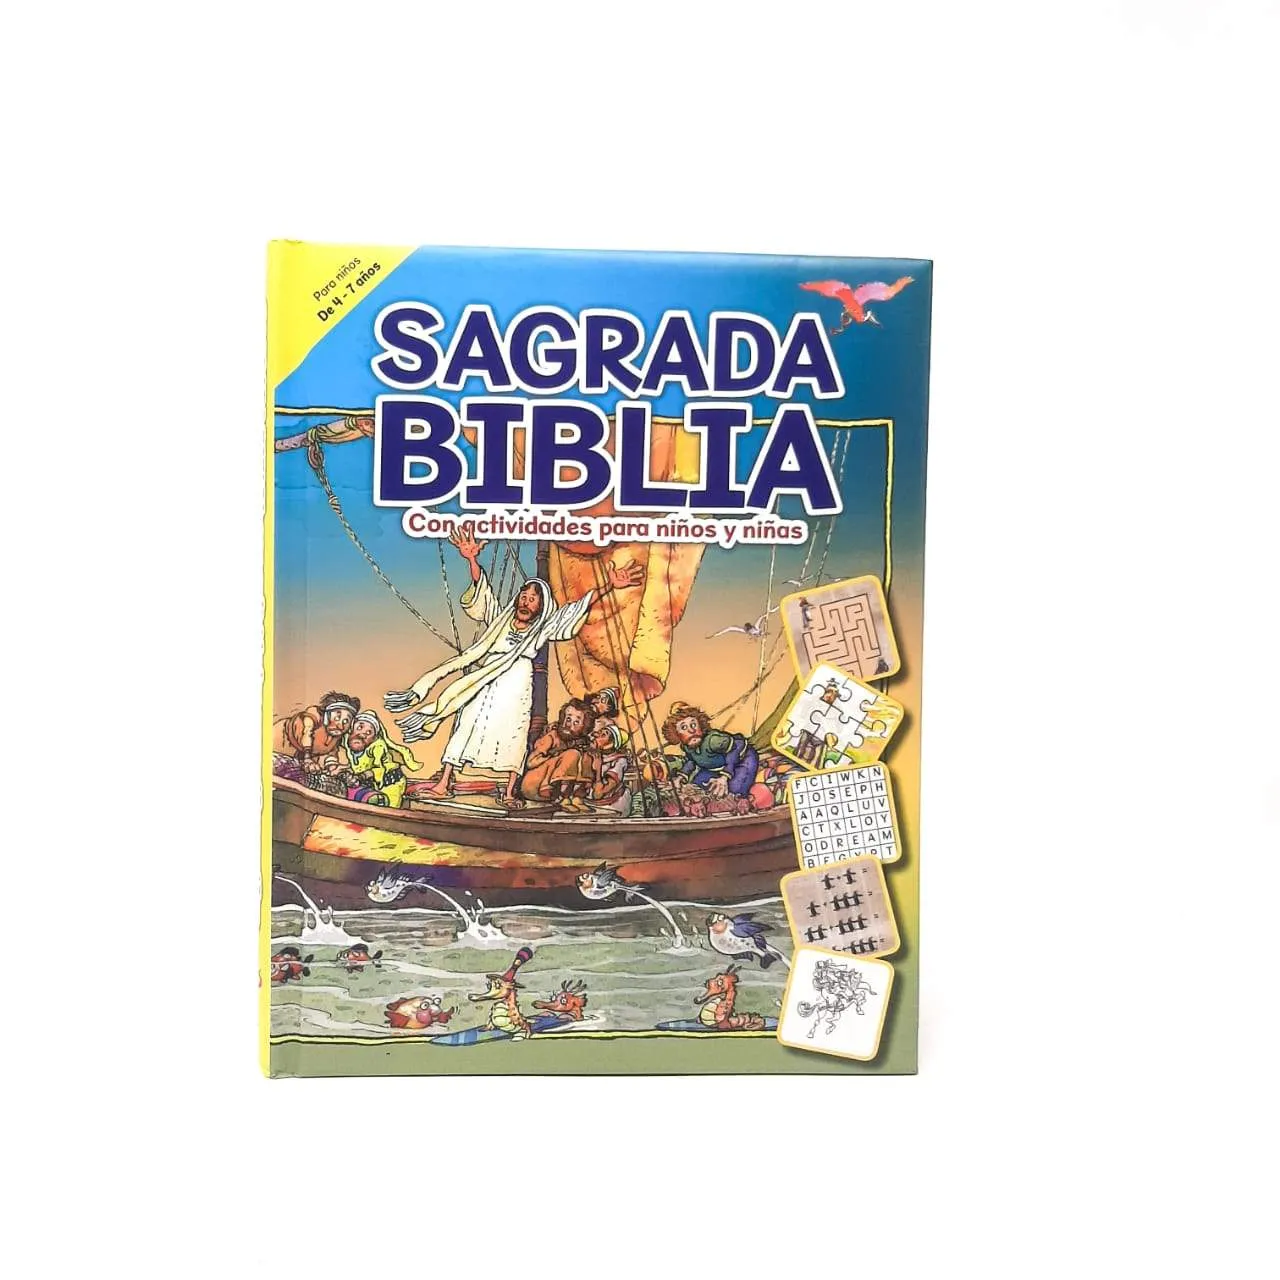 Sagrada Biblia, Con actividades para niños y niñas